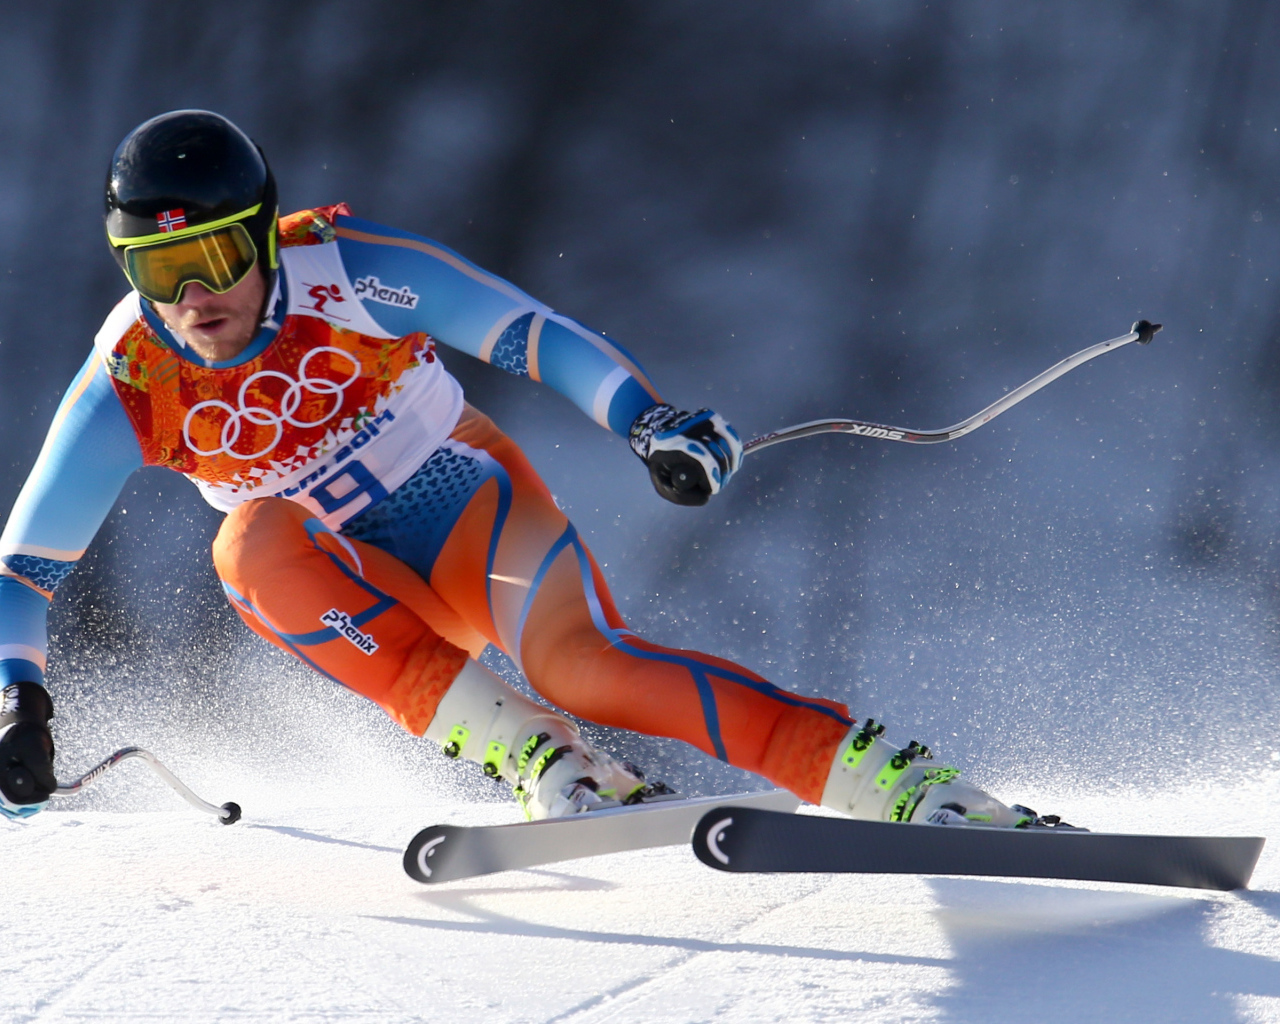 Croatian skier Ivica Kostelic silver medal in Sochi 2014